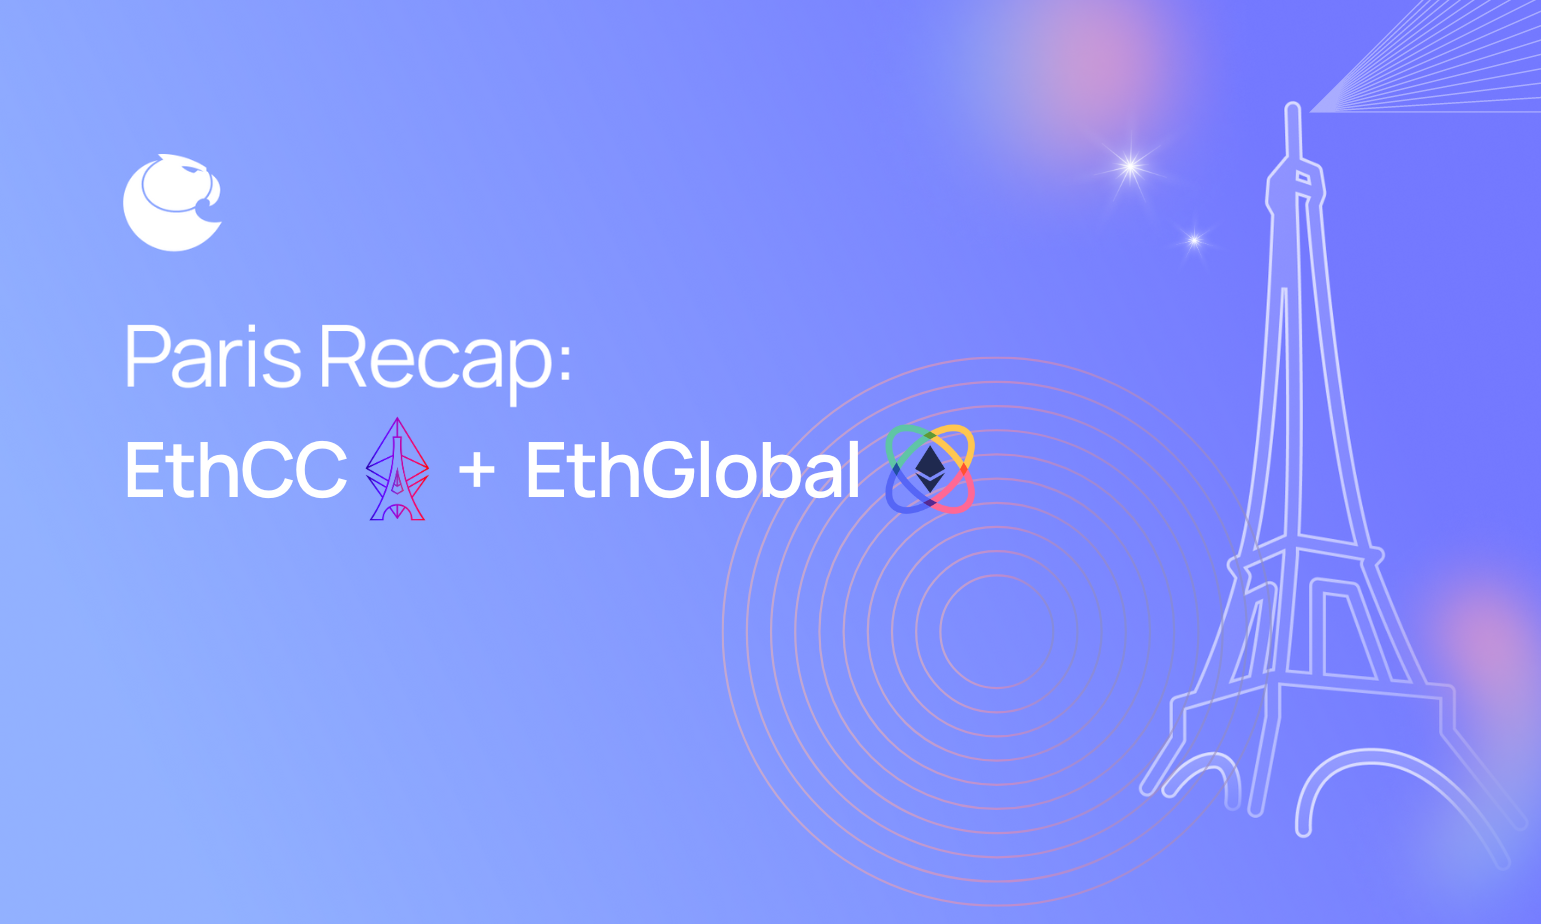 Paris Recap: EthCC + EthGlobal